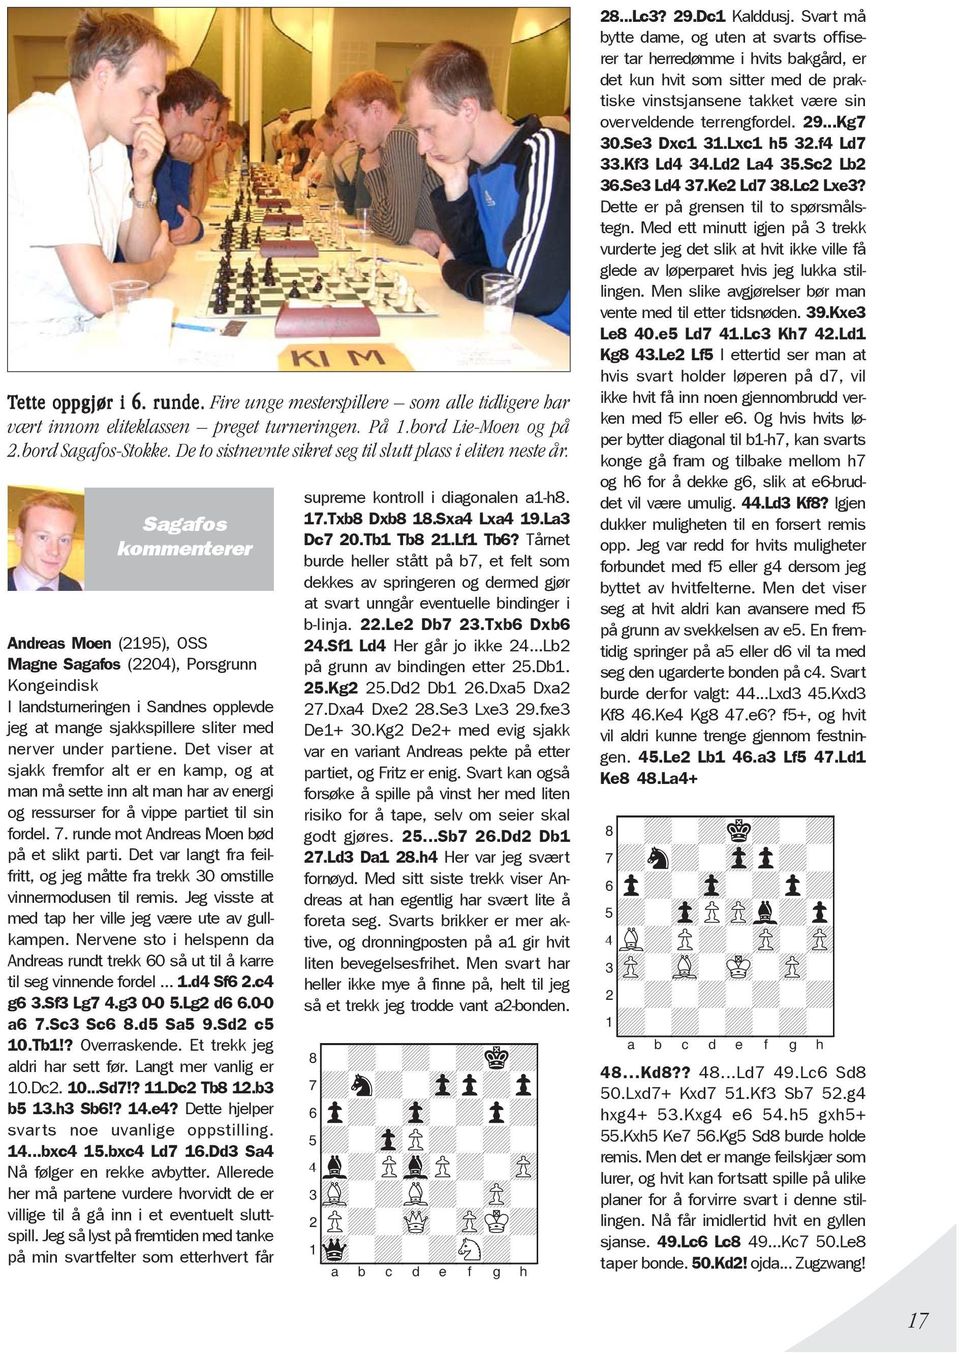 Sagafos kommenterer Andreas Moen (2195), OSS Magne Sagafos (2204), Porsgrunn Kongeindisk I landsturneringen i Sandnes opplevde jeg at mange sjakkspillere sliter med nerver under partiene.